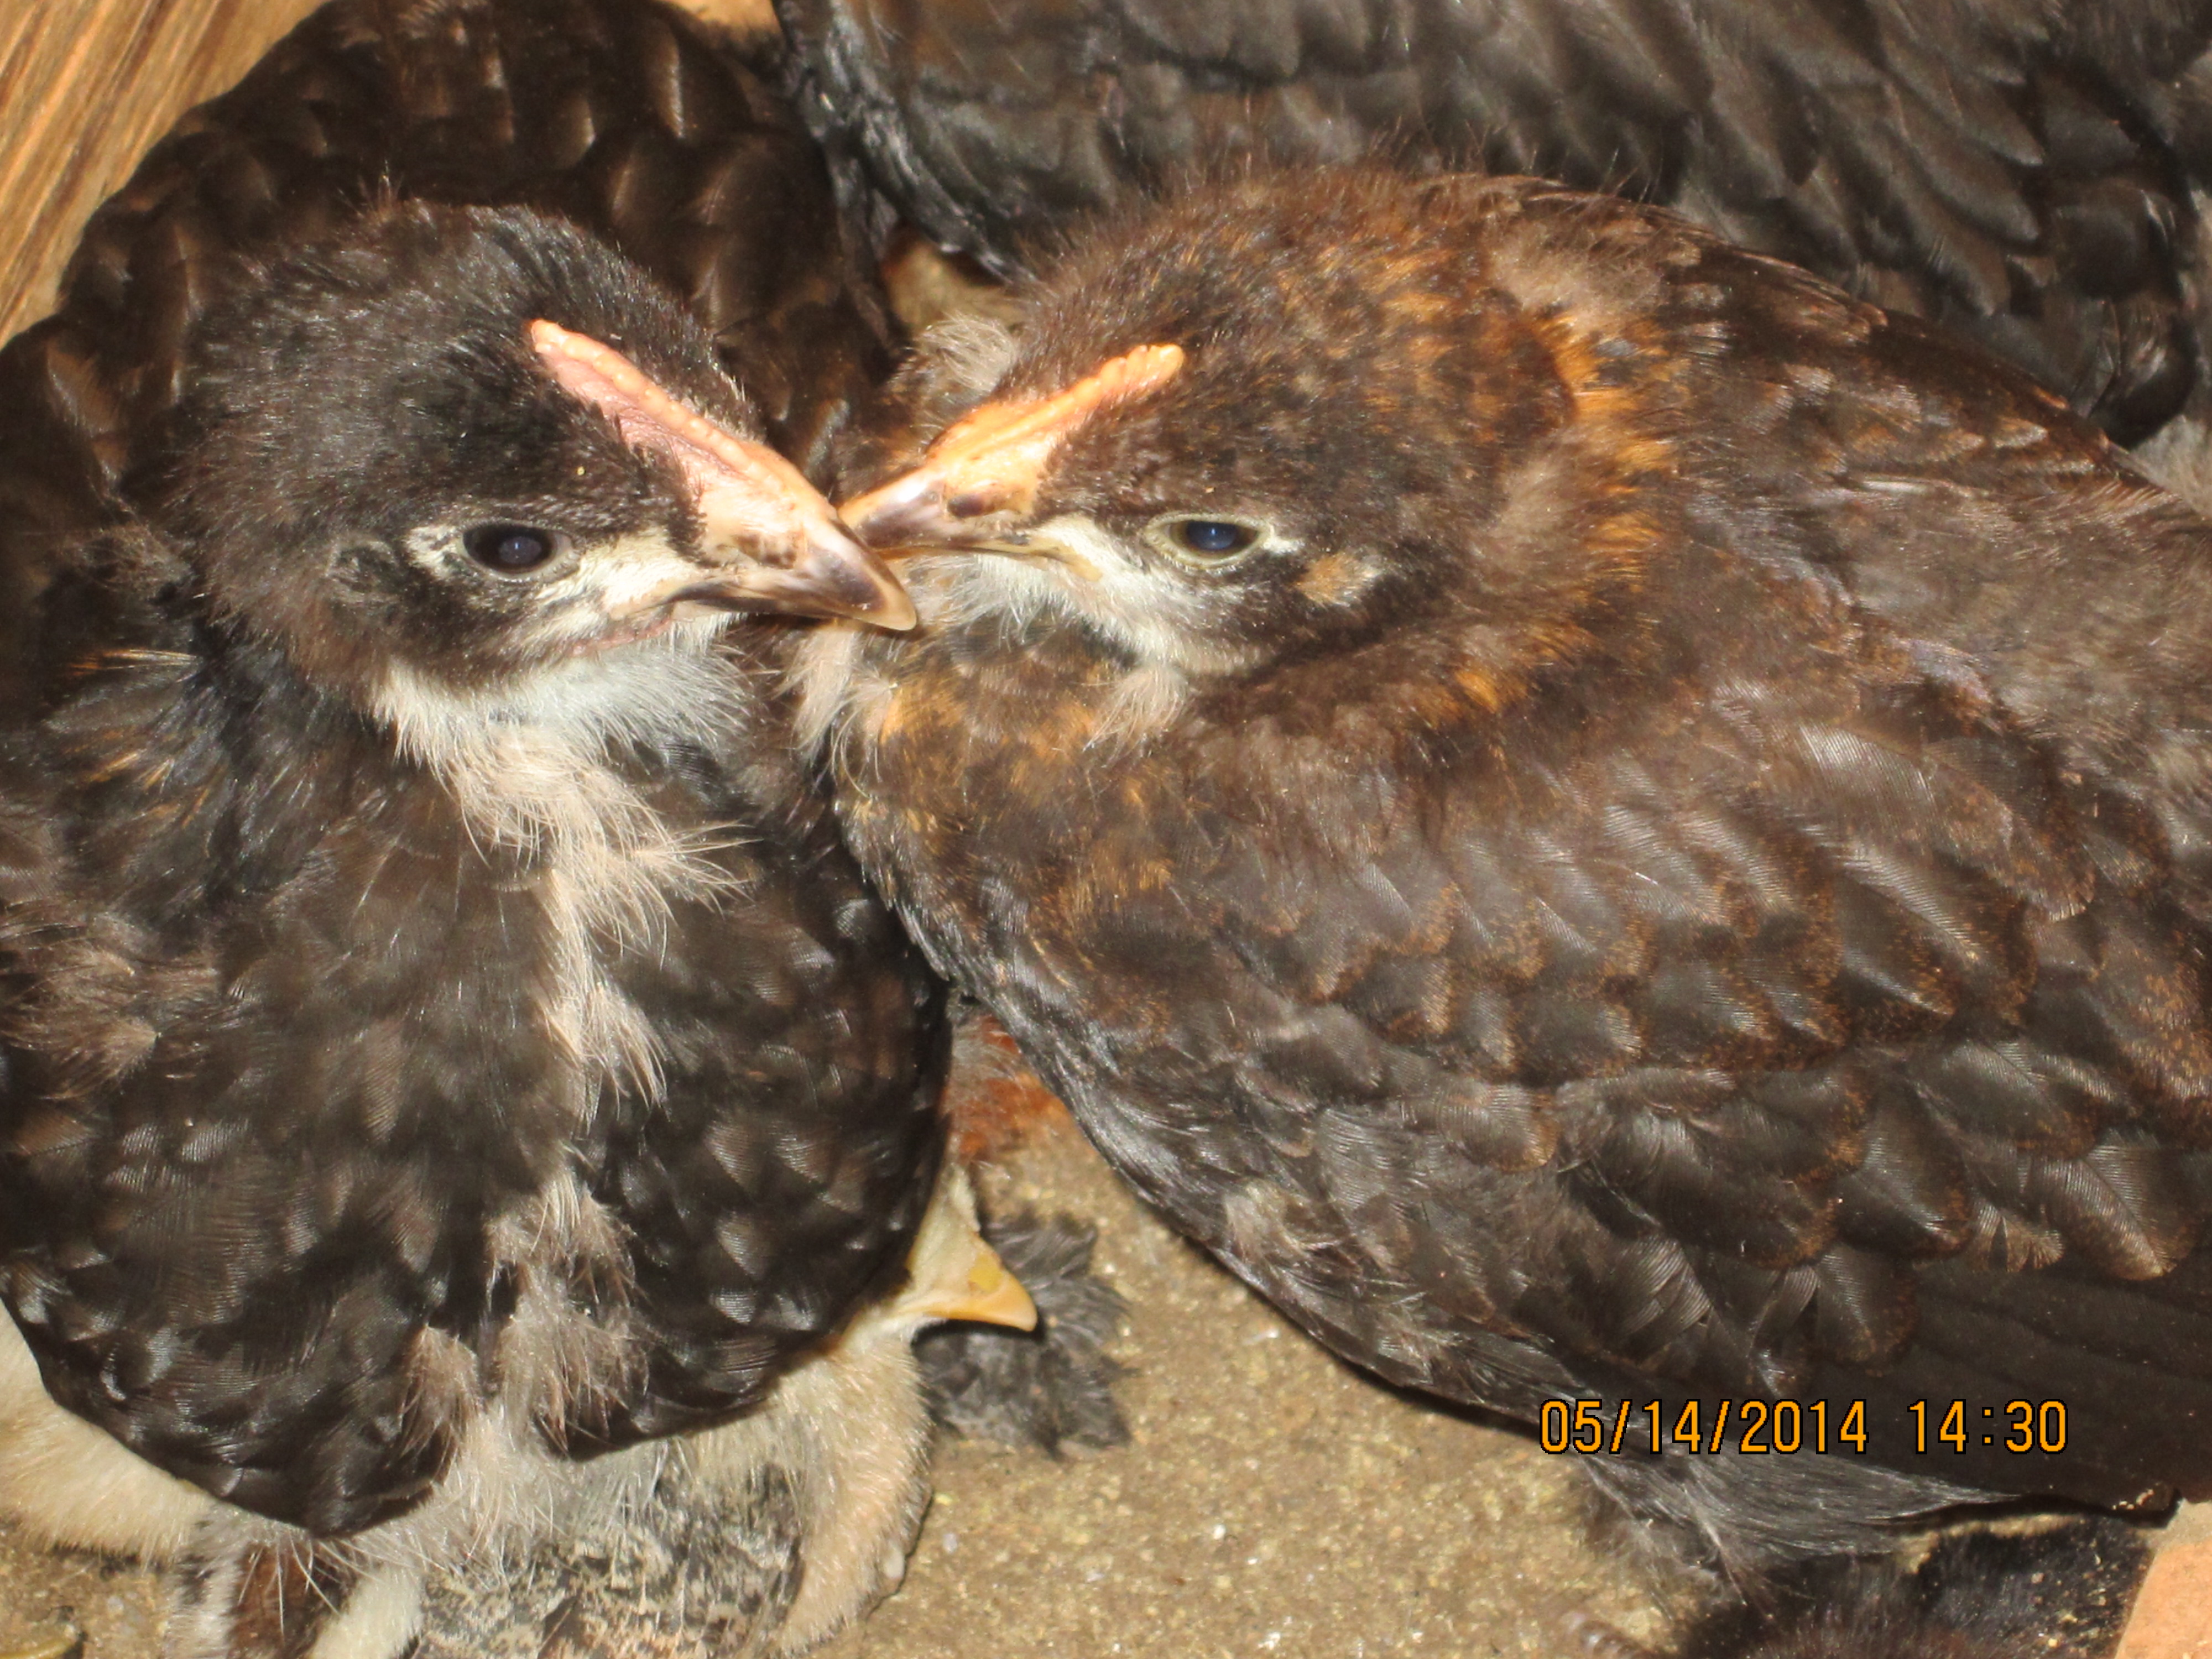 4 week old chicks